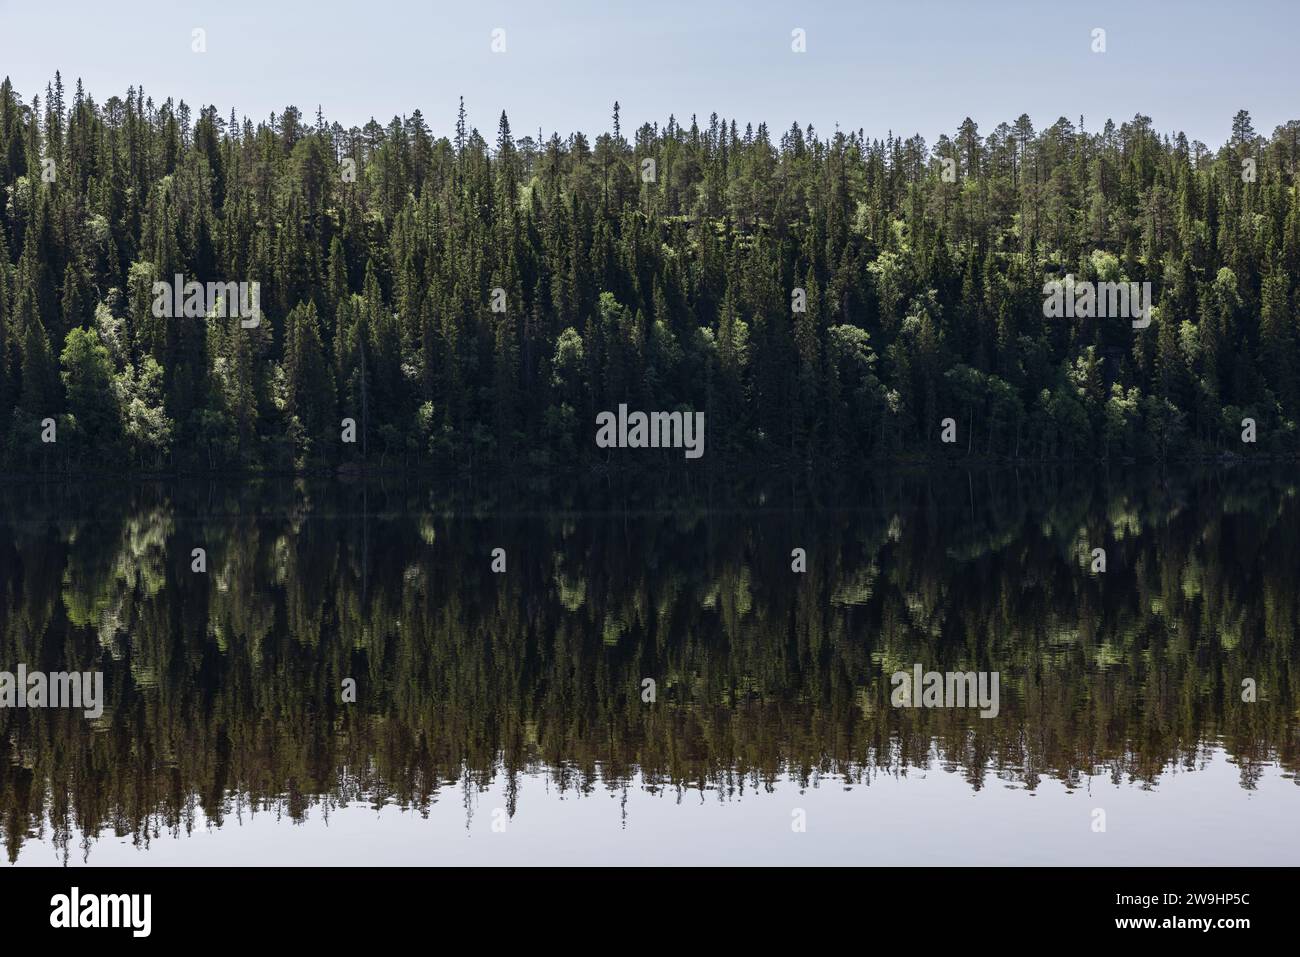 Lo splendore panoramico dell'estate a Snasavatnet, Steinkjer, Norvegia, caratterizzato da sponde boscose che si specchiano nelle acque tranquille e cristalline del lago Foto Stock